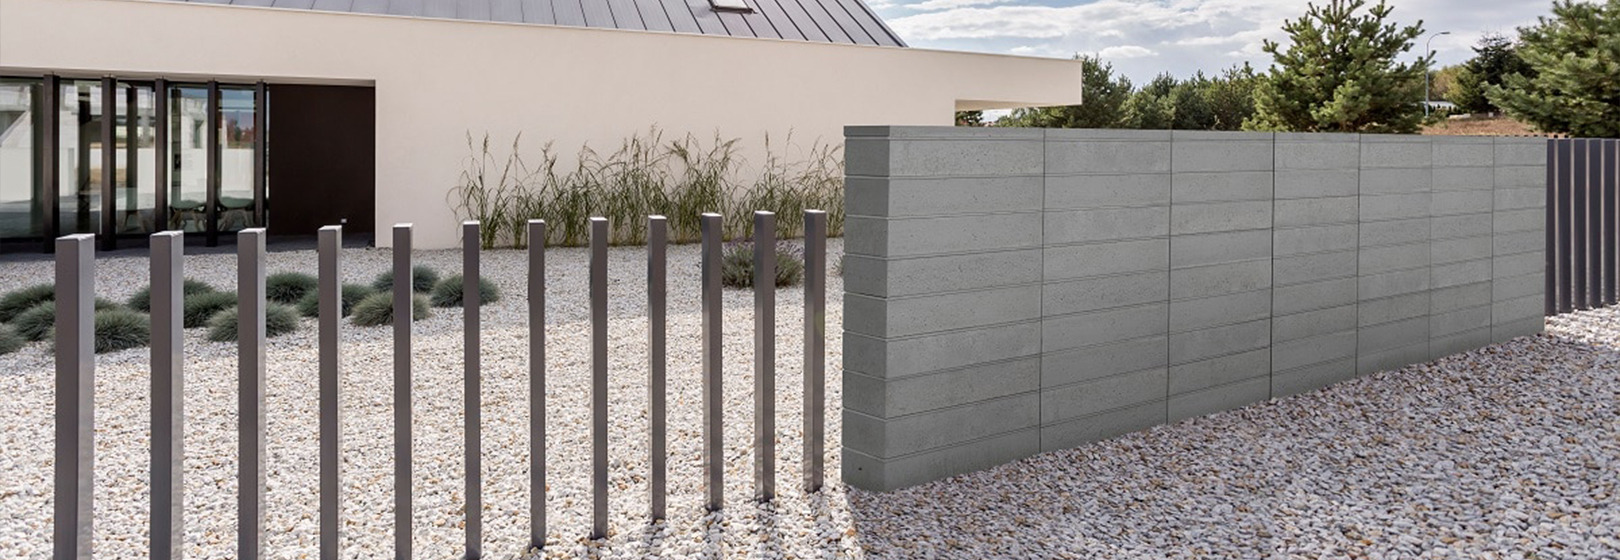 nowoczesne ogrodzenie z betonu i metalu